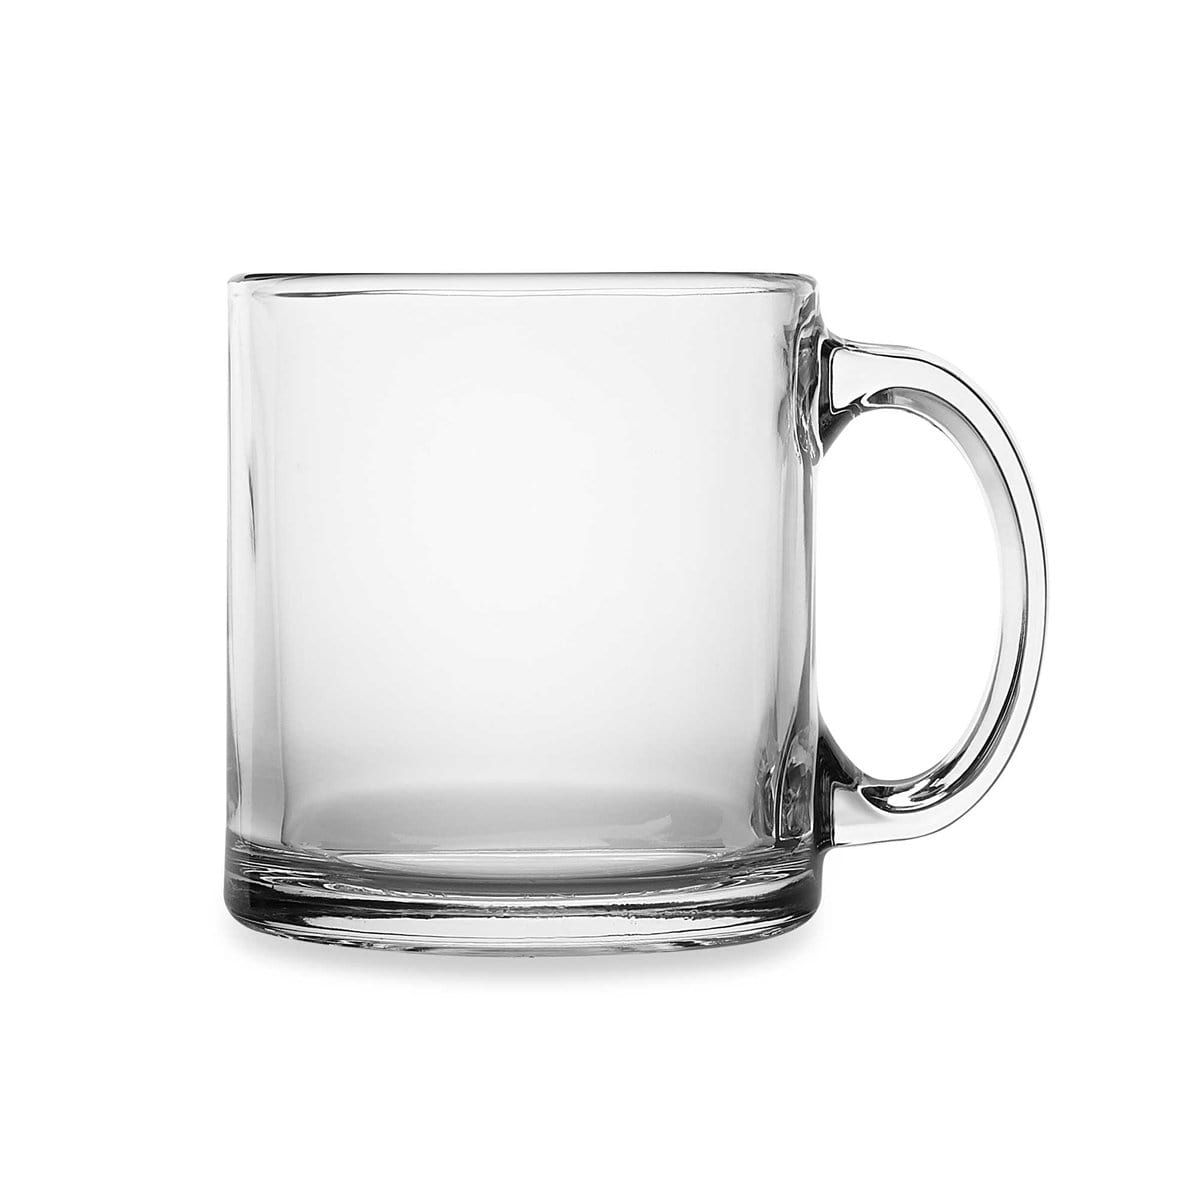 Libbey Square Coffee Mug Glasses, 14 oz/414 mL, Set of 4 